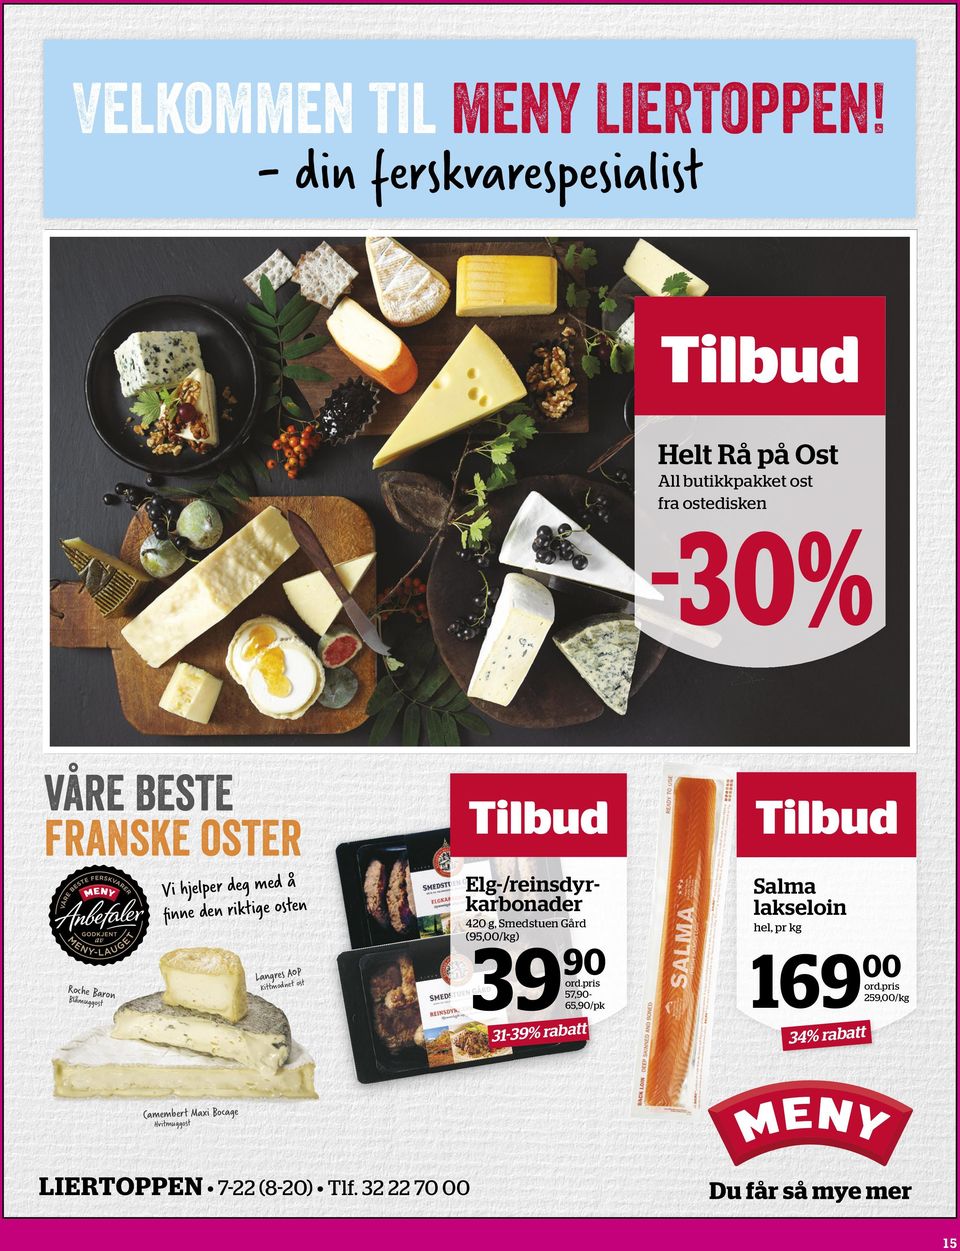 den riktige osten Tilbud Tilbud Elg-/reinsdyrkarbonader Salma lakseloin 420 g, Smedstuen Gård (95,00/kg) P Langres AOt ost Kittmodne